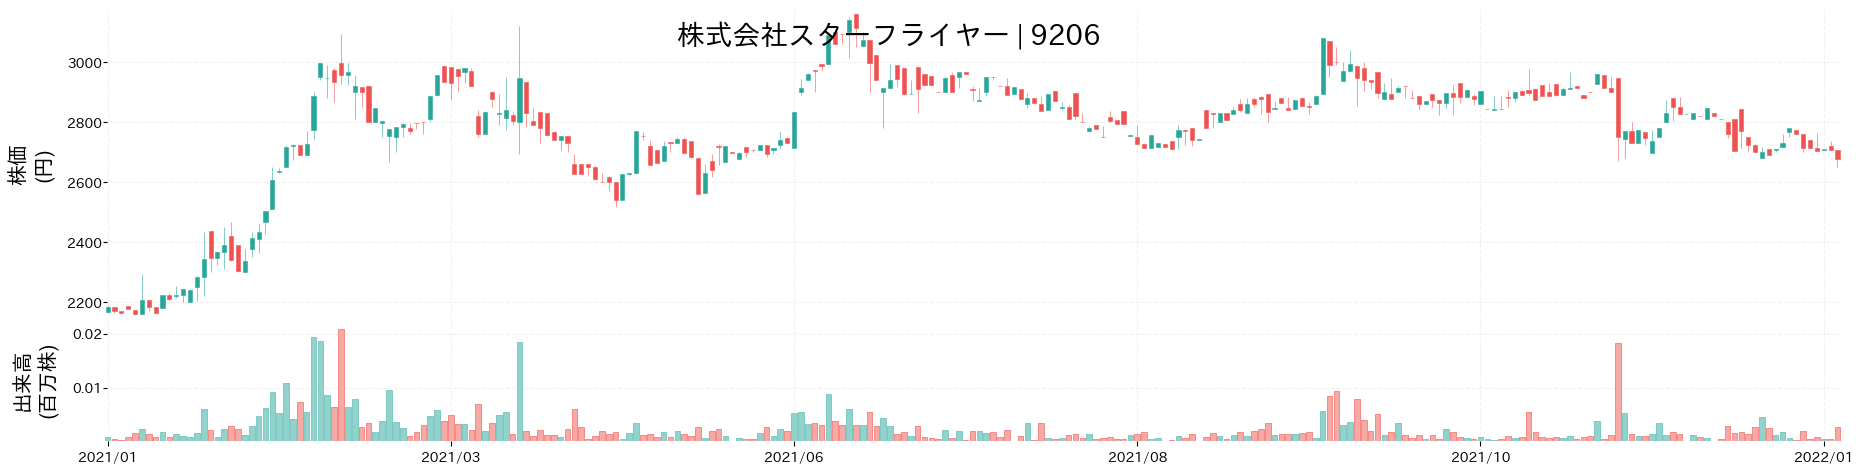 スターフライヤーの株価推移(2021)